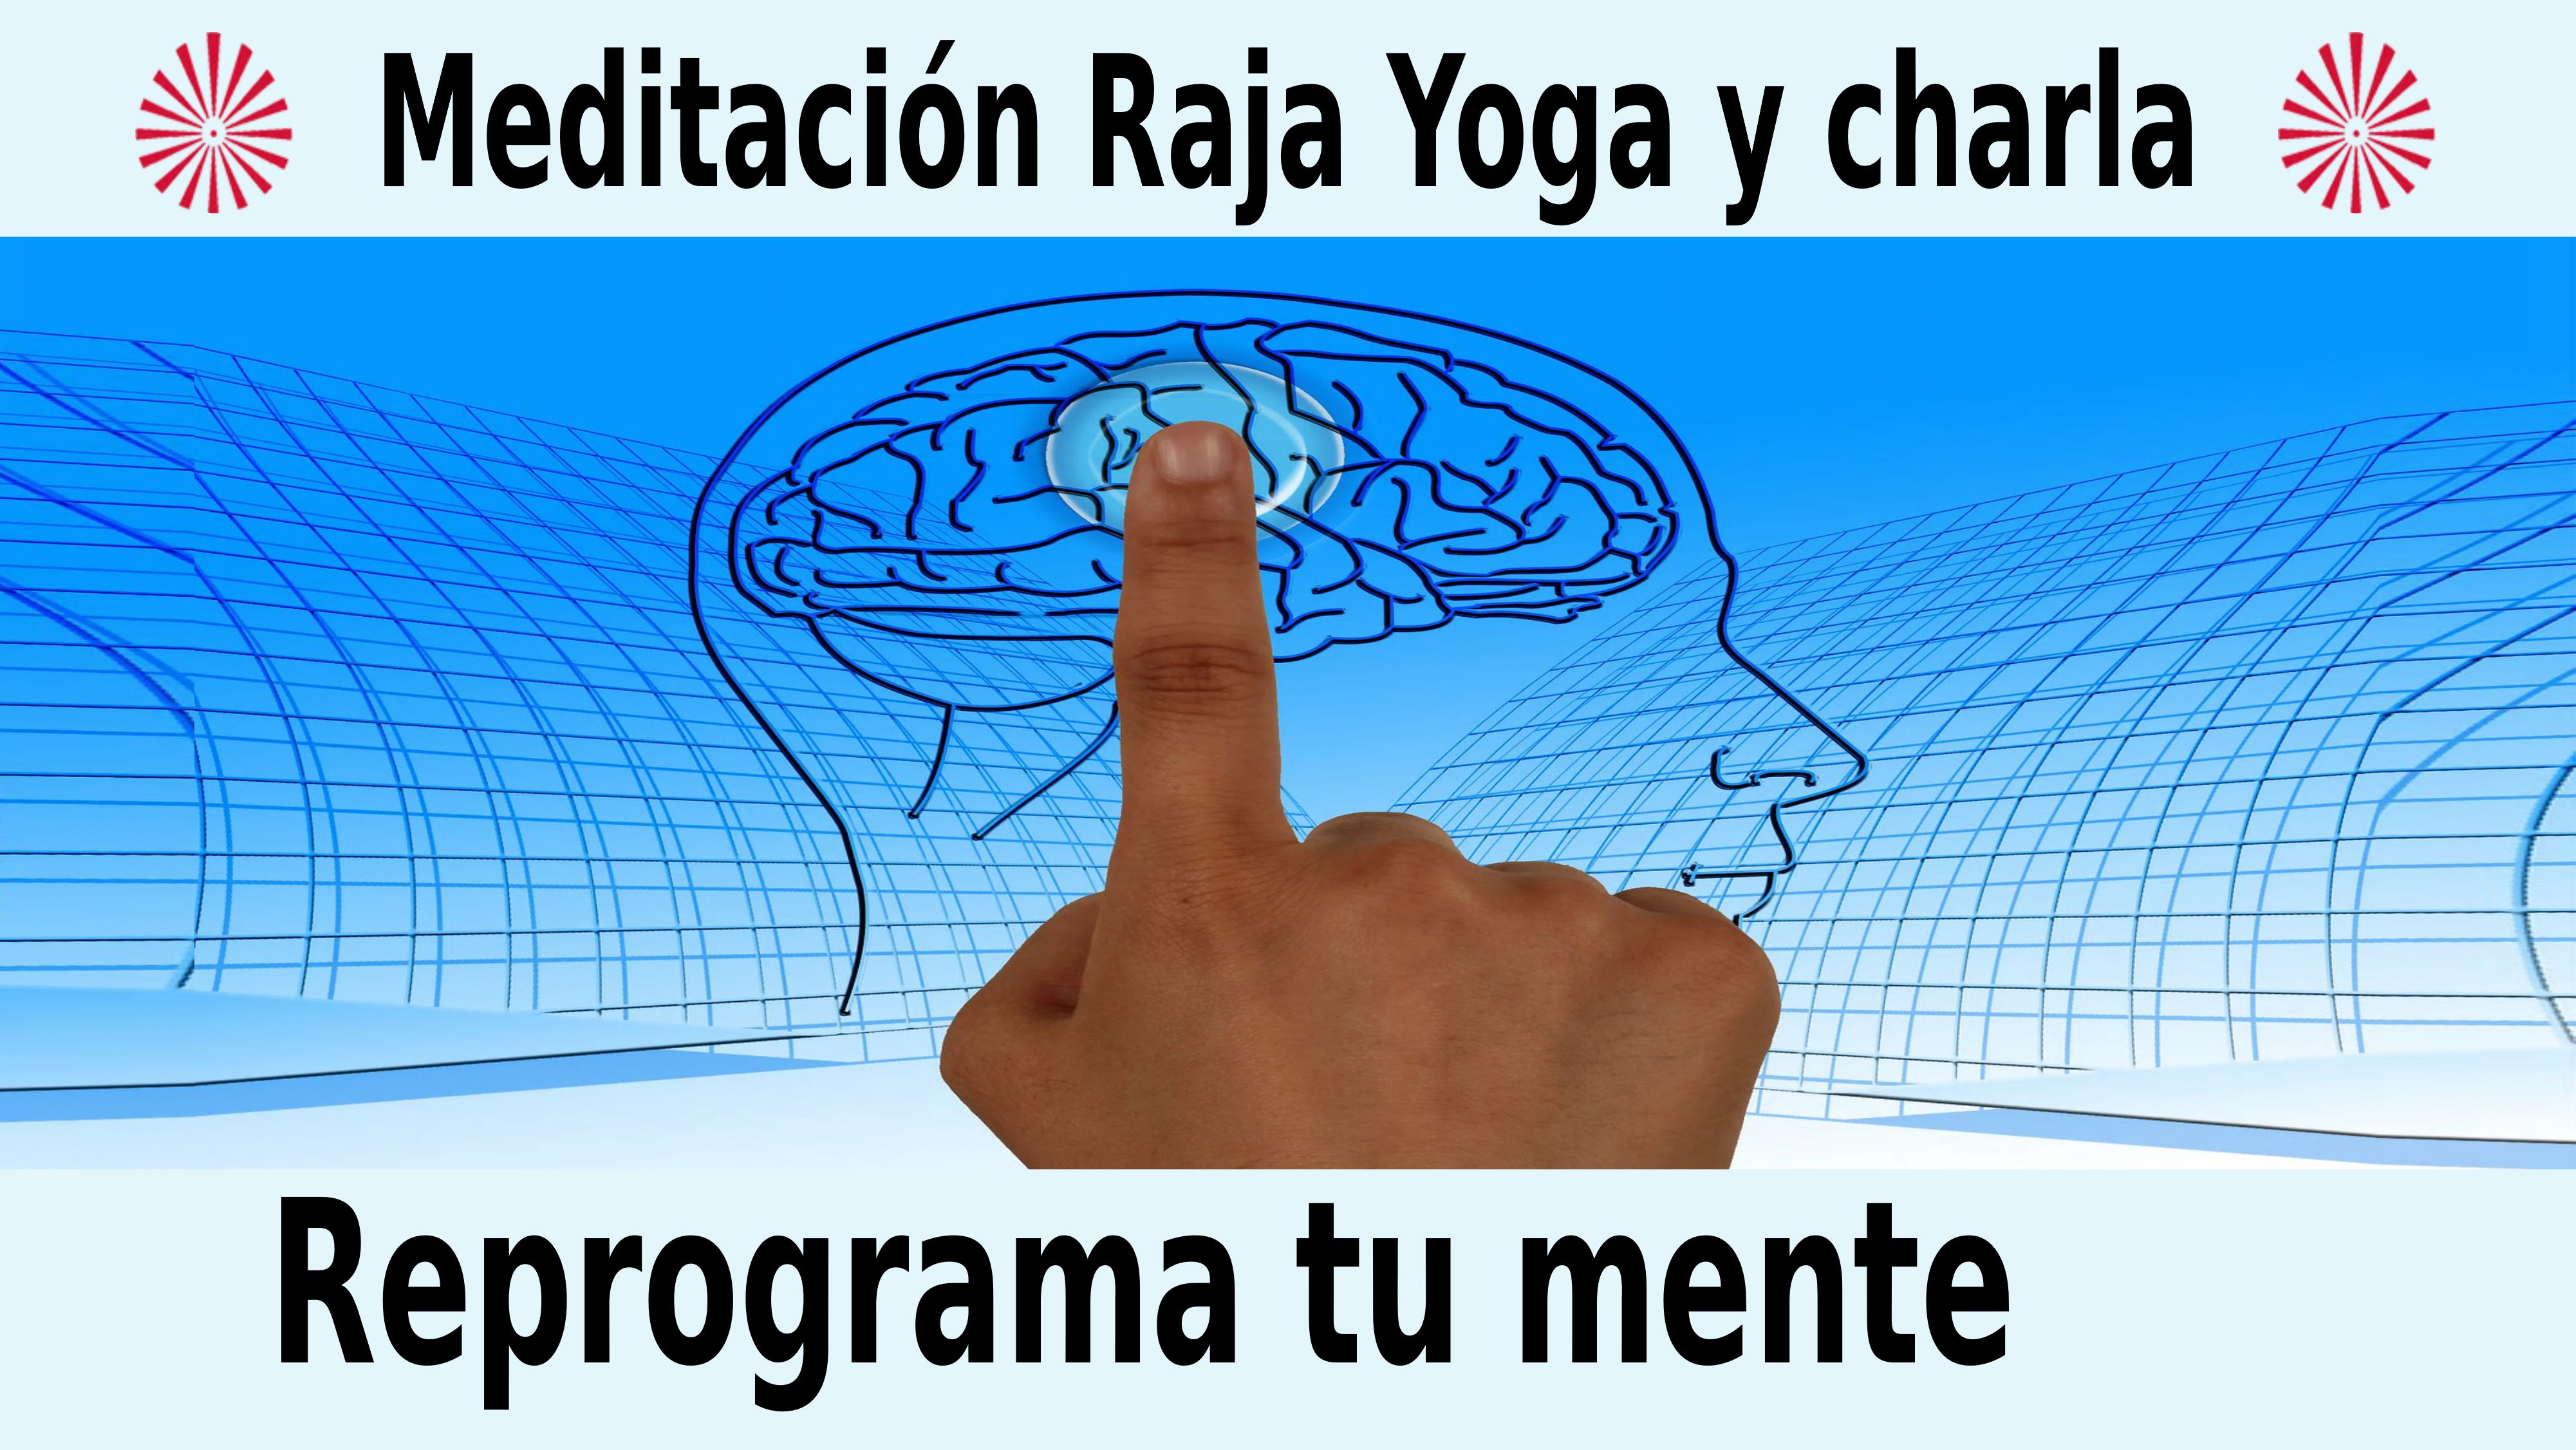 Meditación  Raja yoga y charla: Reprograma tu mente (18 Diciembre 2020) On-line desde Madrid